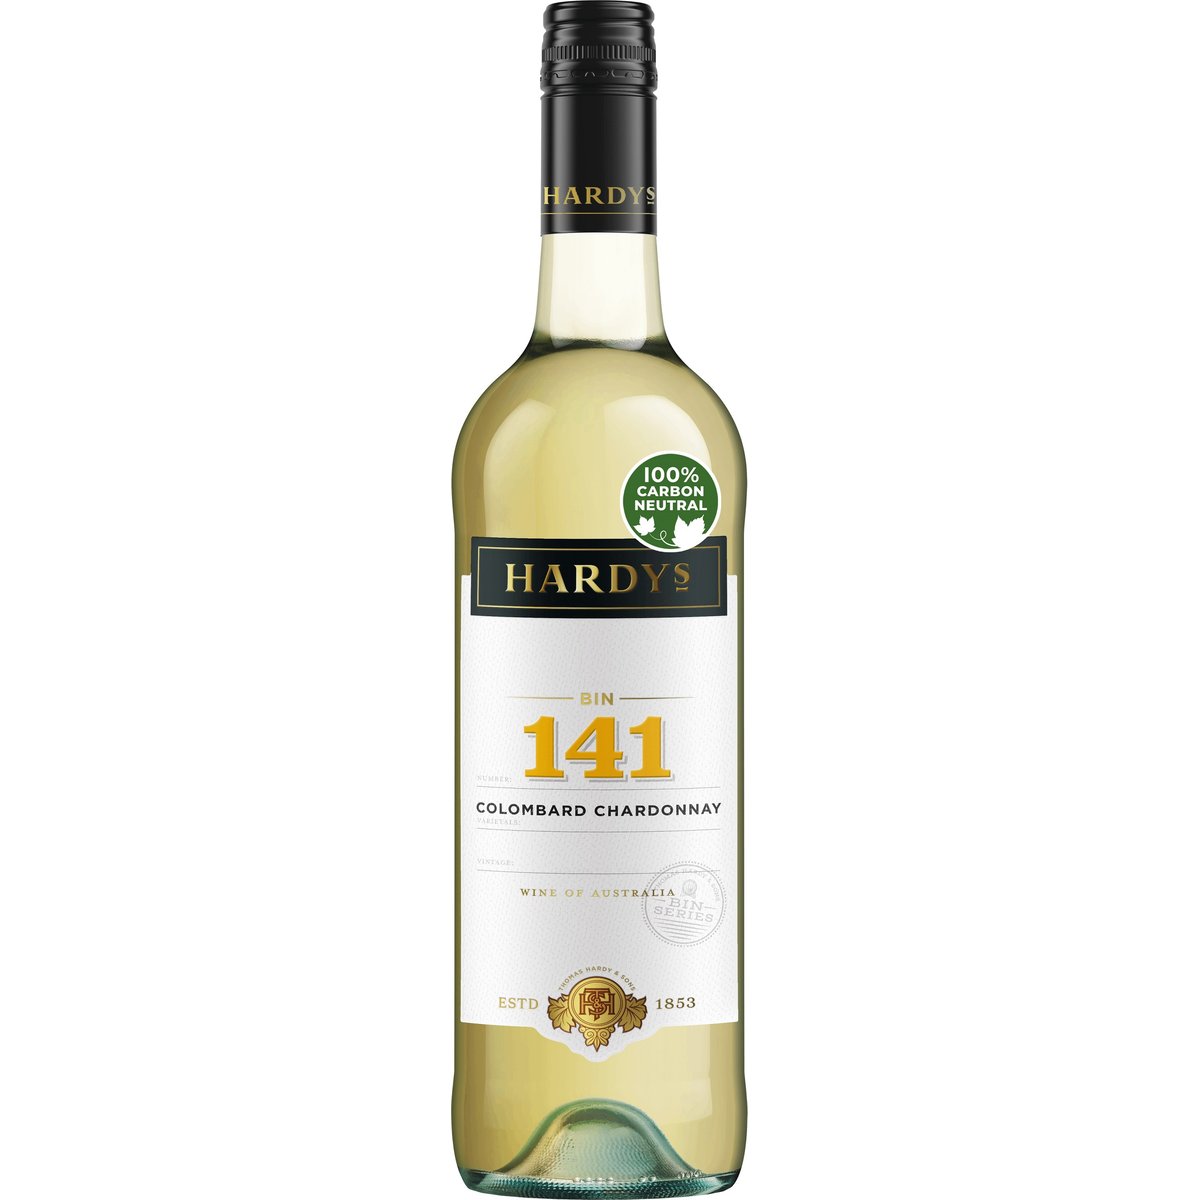 Hardys Bin 141 Colombard Chardonnay CO2 neutrální